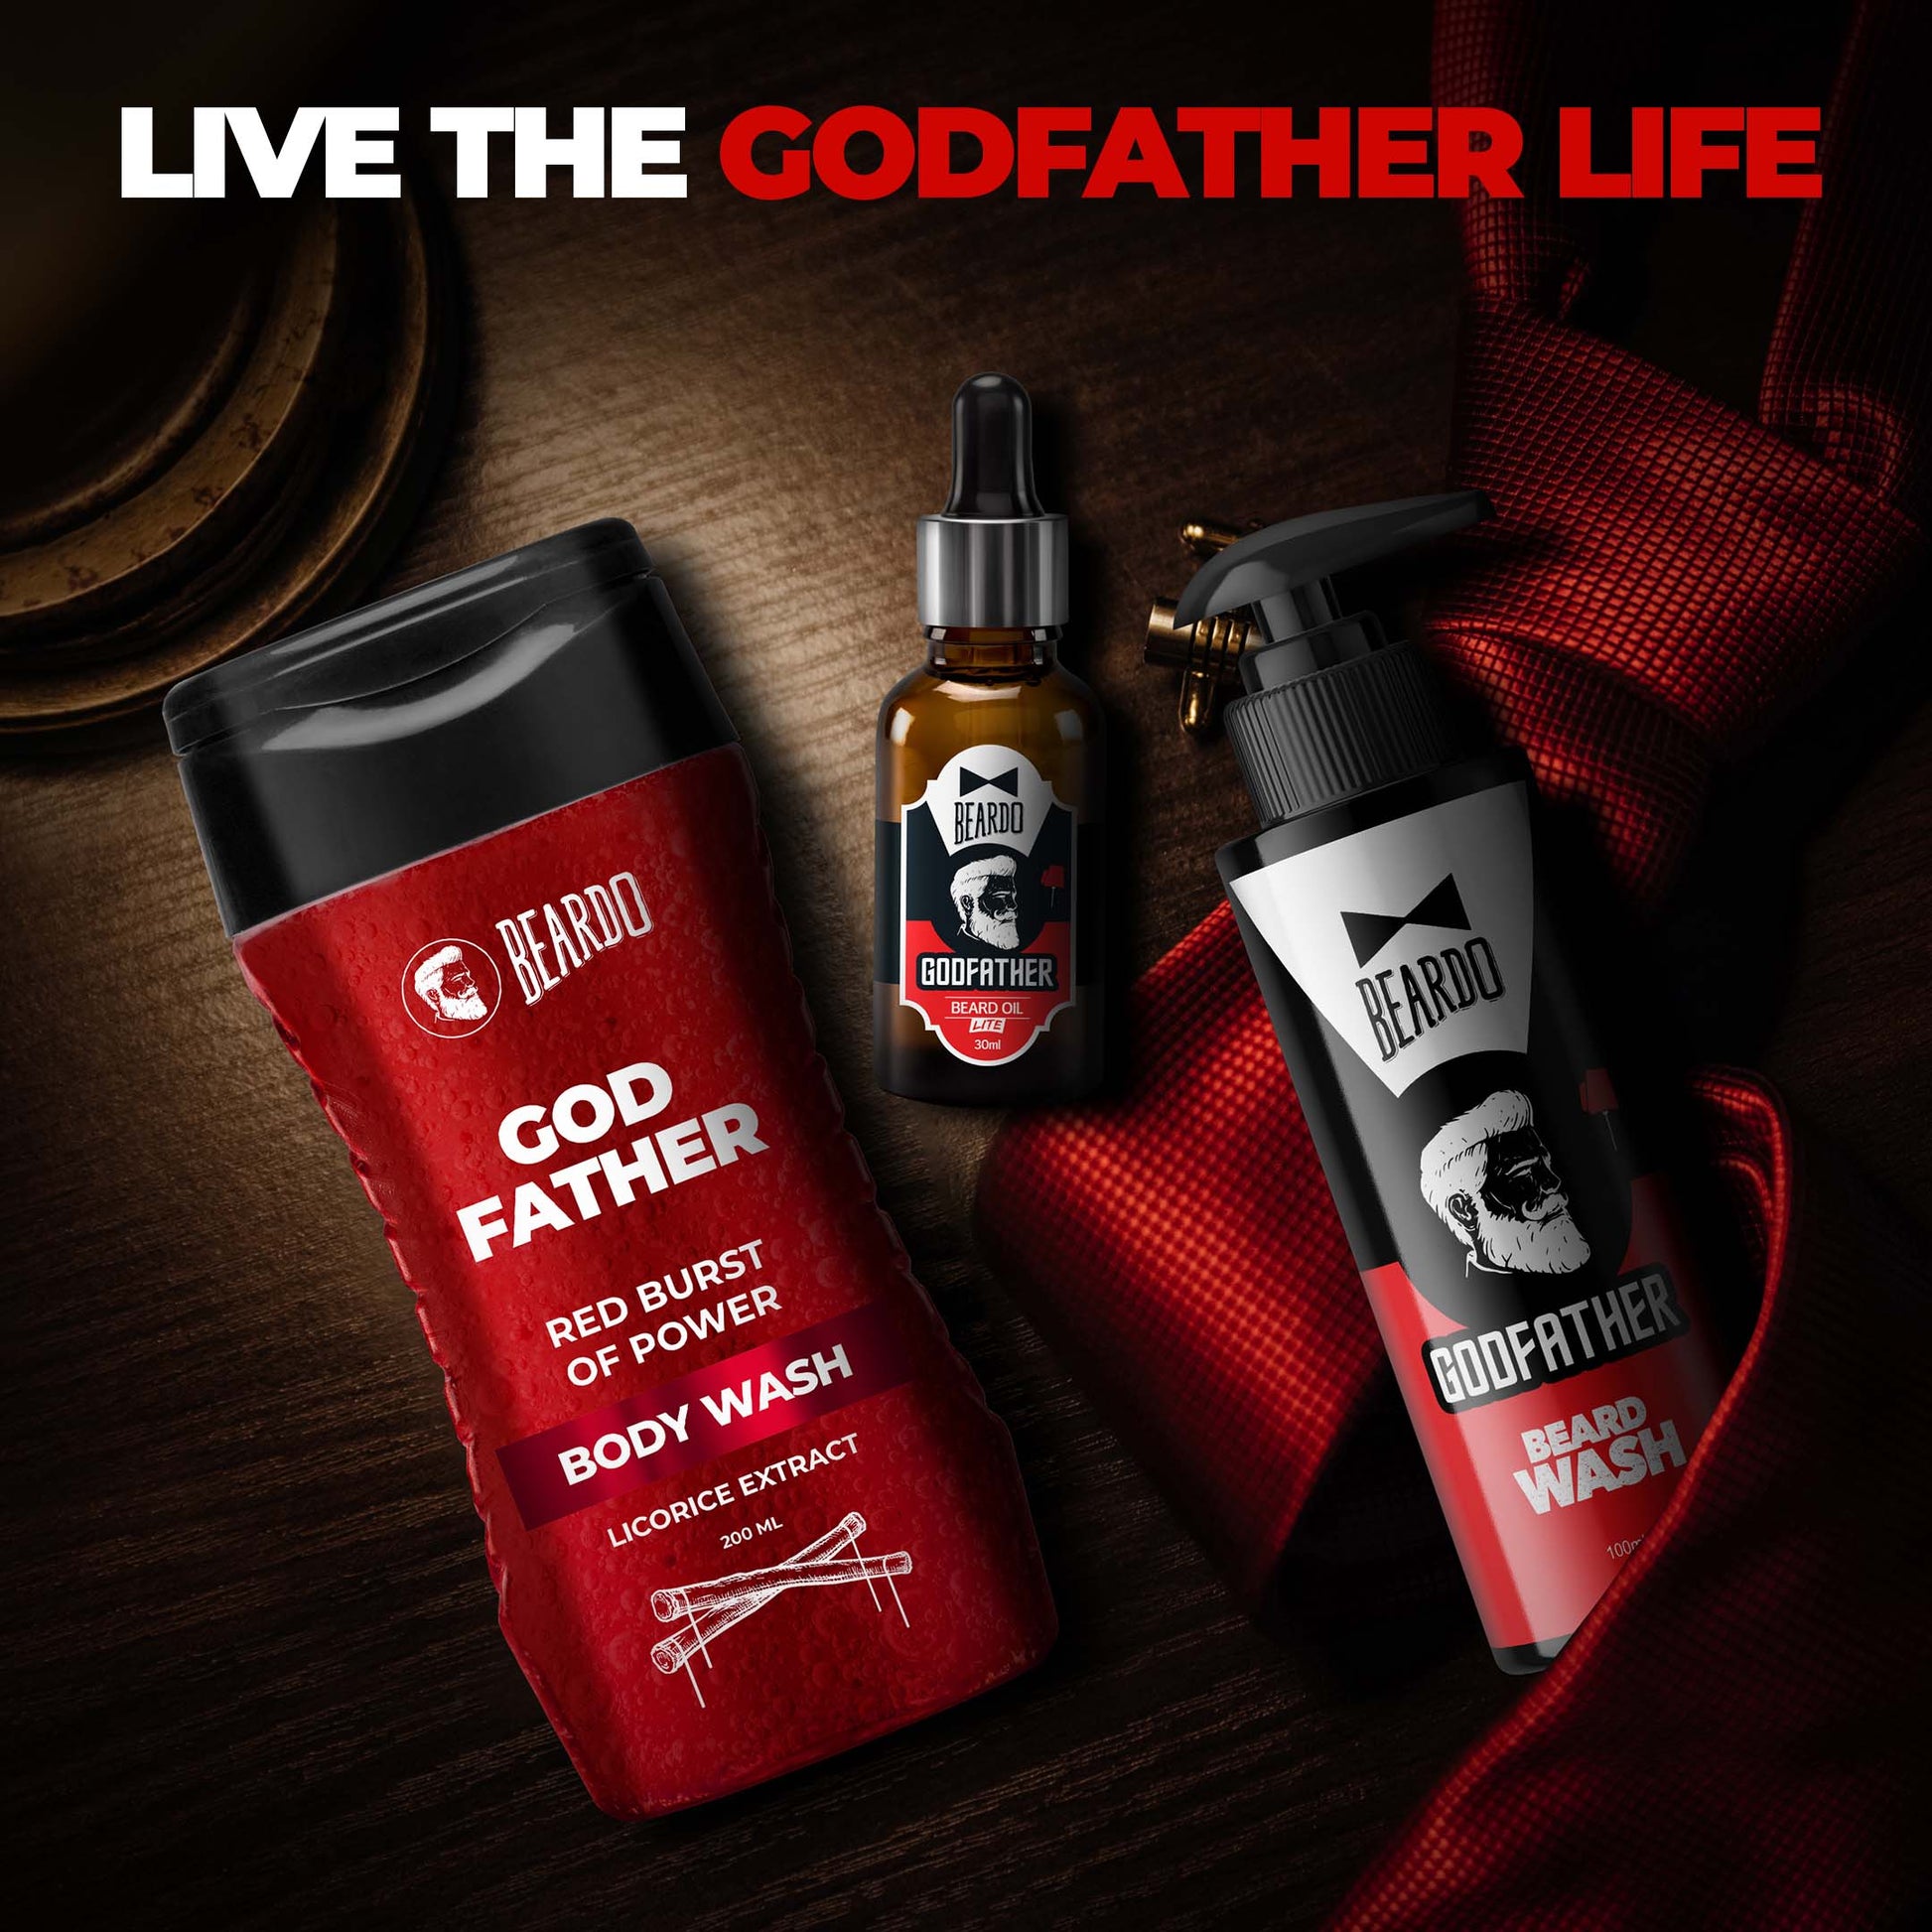 Beardo Godfather Beard oil